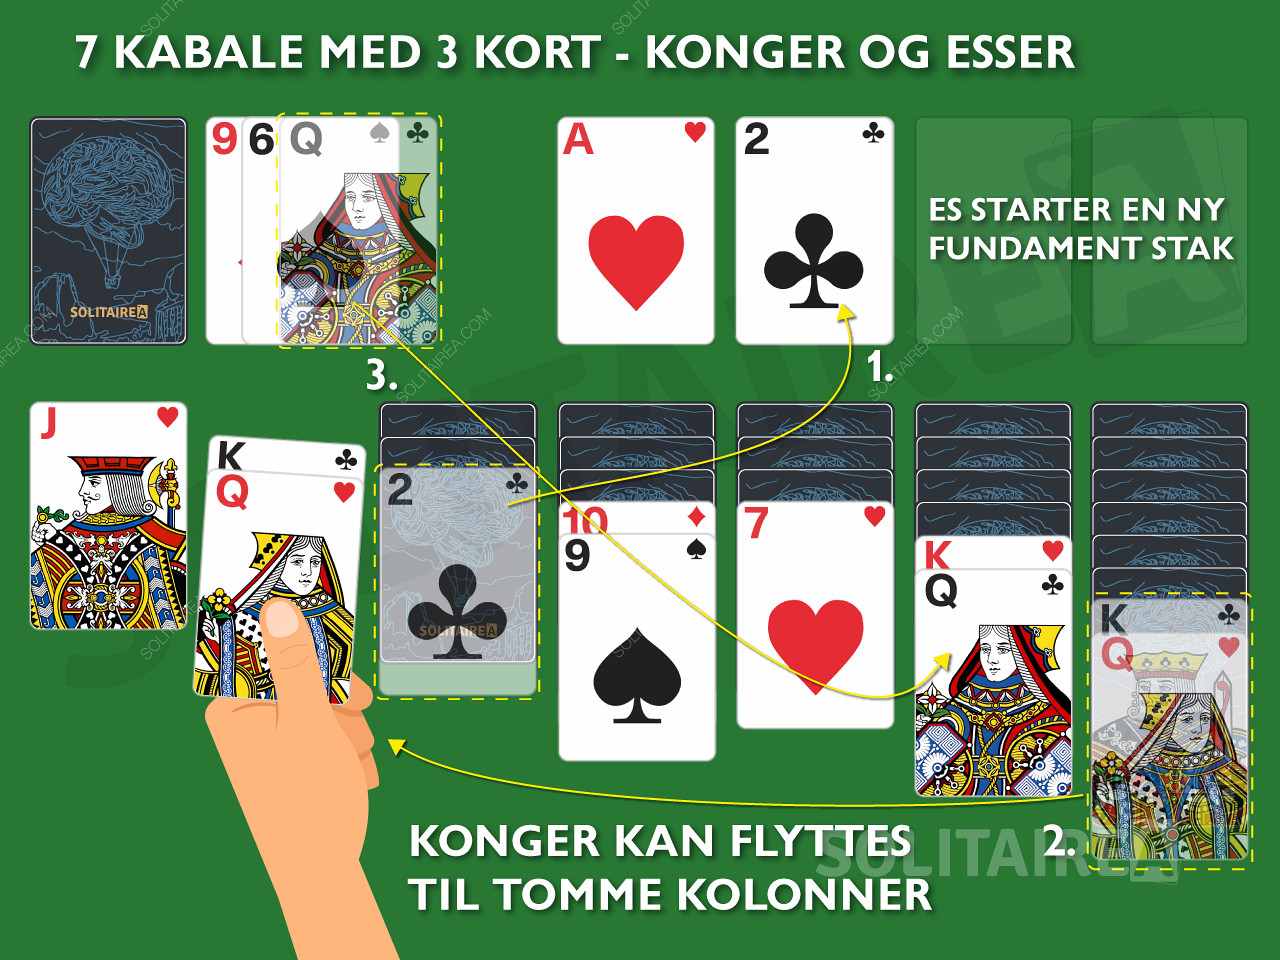 Konger og esser. Flyt dine konger til tomme kolonner i 7 kabale med 3 kort.